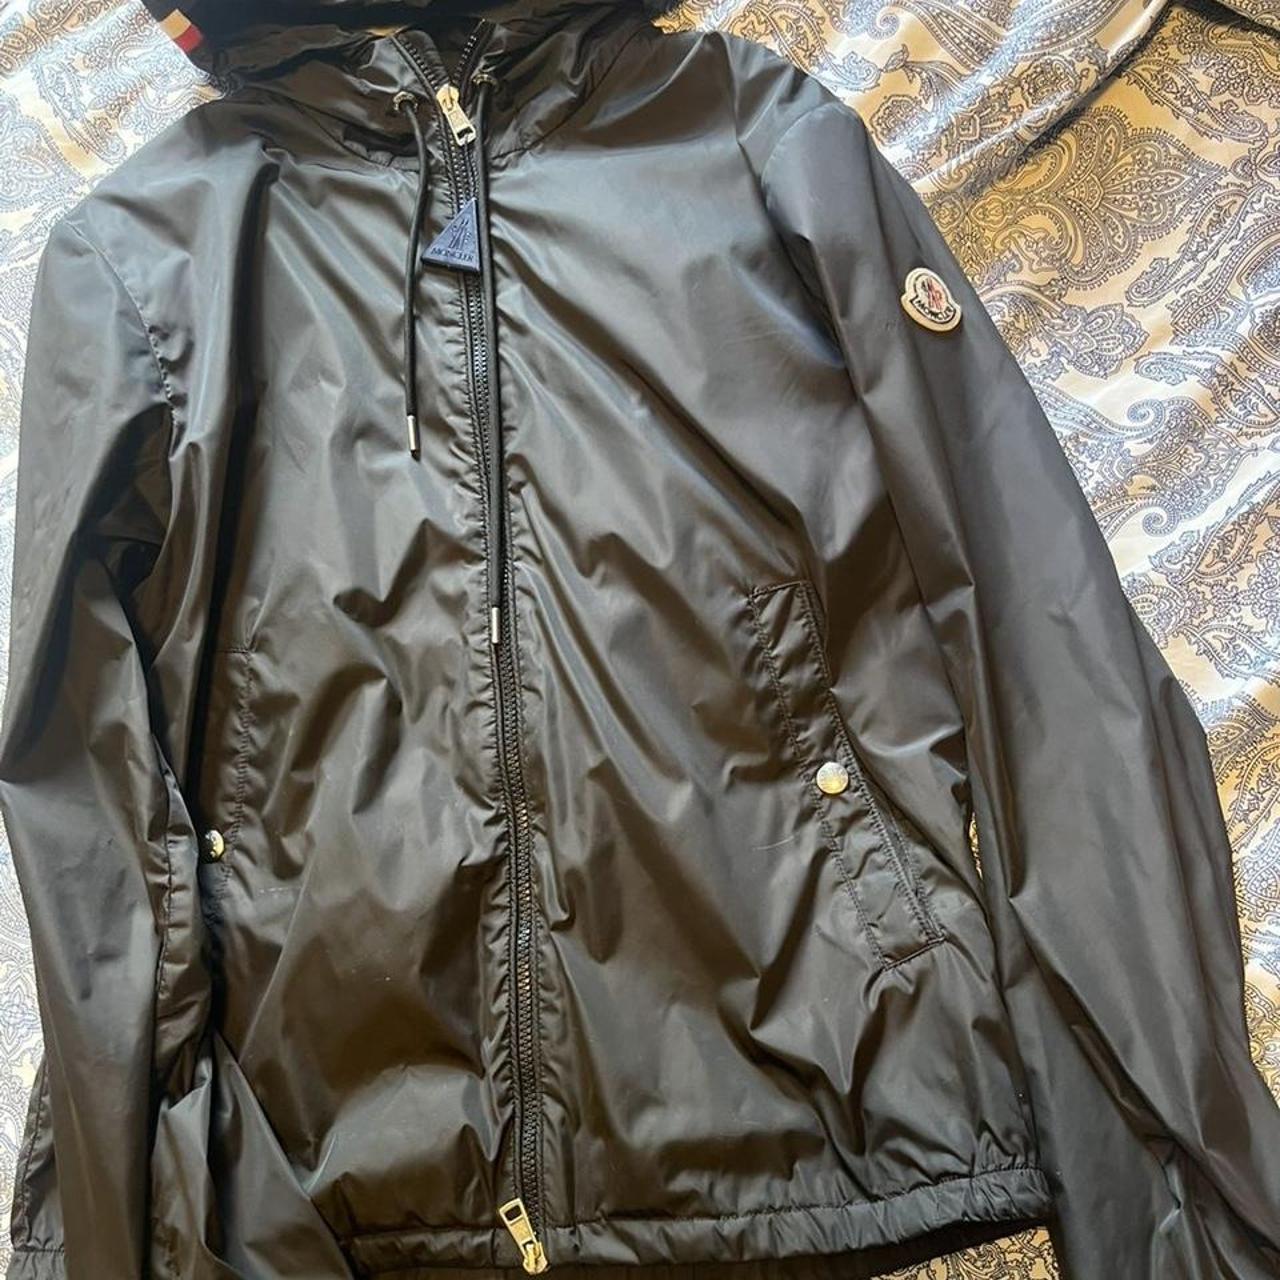 Moncler grimpeurs jacket, excellent condition still... - Depop